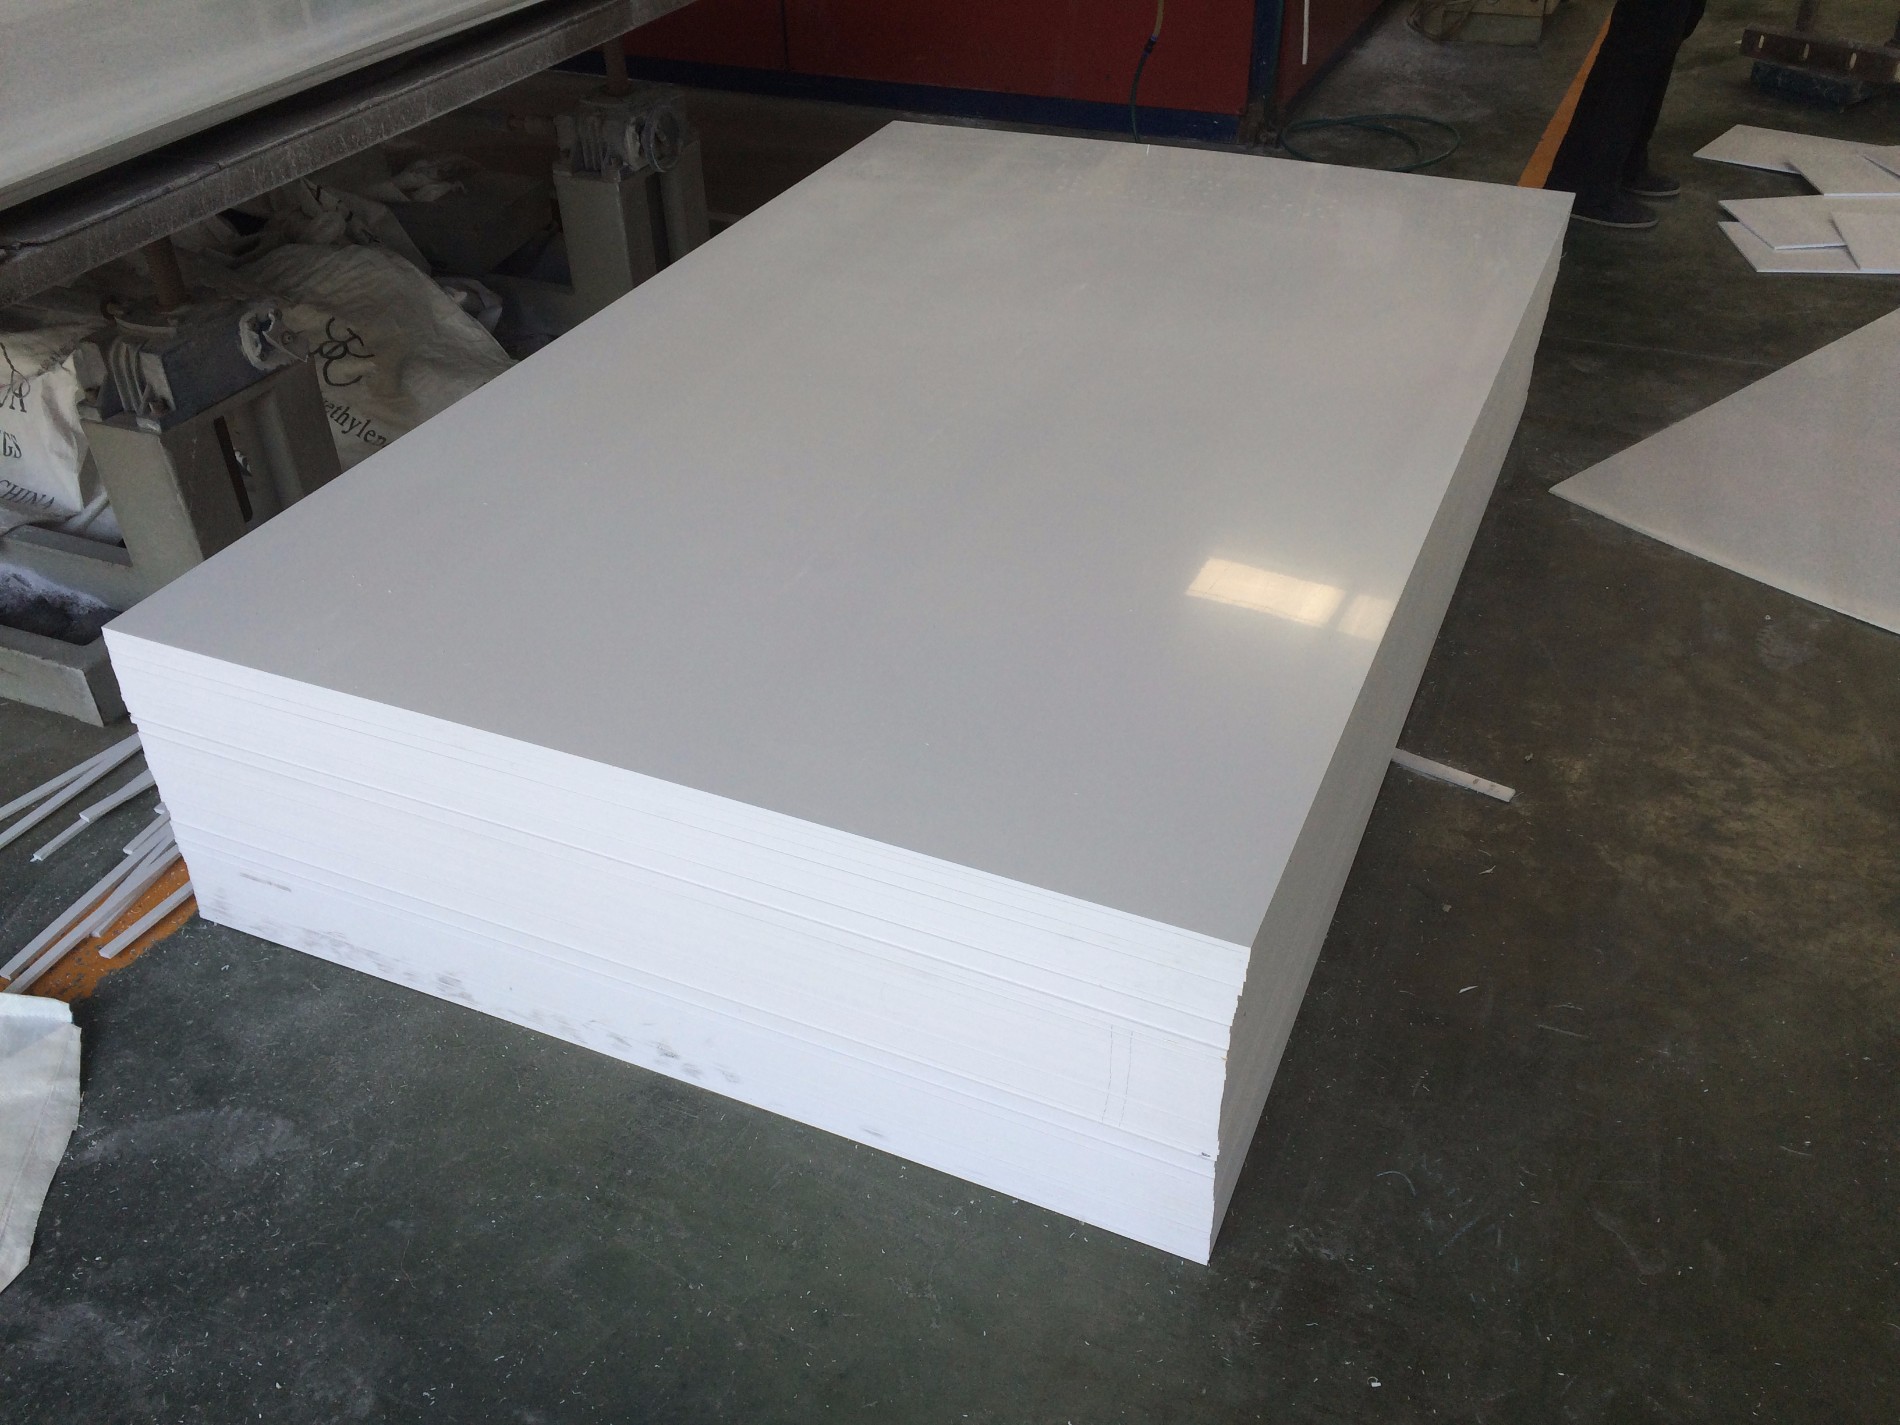 주문 1.45 밀도 흰색 PVC 단단한 시트로 주방 위생적인 ​​벽 클래딩,1.45 밀도 흰색 PVC 단단한 시트로 주방 위생적인 ​​벽 클래딩 가격,1.45 밀도 흰색 PVC 단단한 시트로 주방 위생적인 ​​벽 클래딩 브랜드,1.45 밀도 흰색 PVC 단단한 시트로 주방 위생적인 ​​벽 클래딩 제조업체,1.45 밀도 흰색 PVC 단단한 시트로 주방 위생적인 ​​벽 클래딩 인용,1.45 밀도 흰색 PVC 단단한 시트로 주방 위생적인 ​​벽 클래딩 회사,